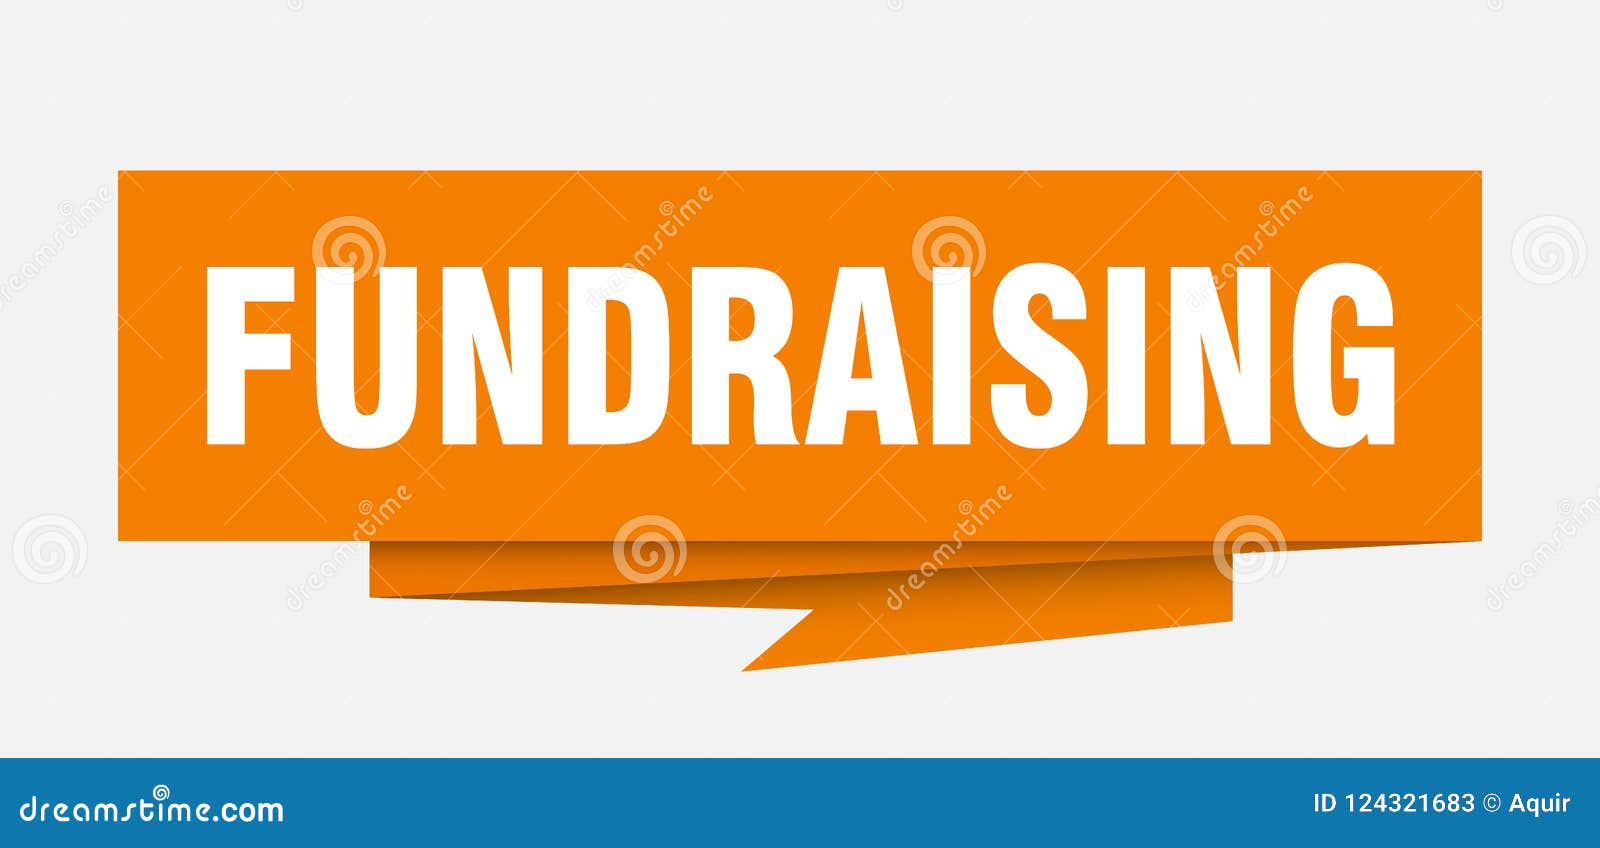 Fundraising stock vector. Illustration of fundraising - 124321683